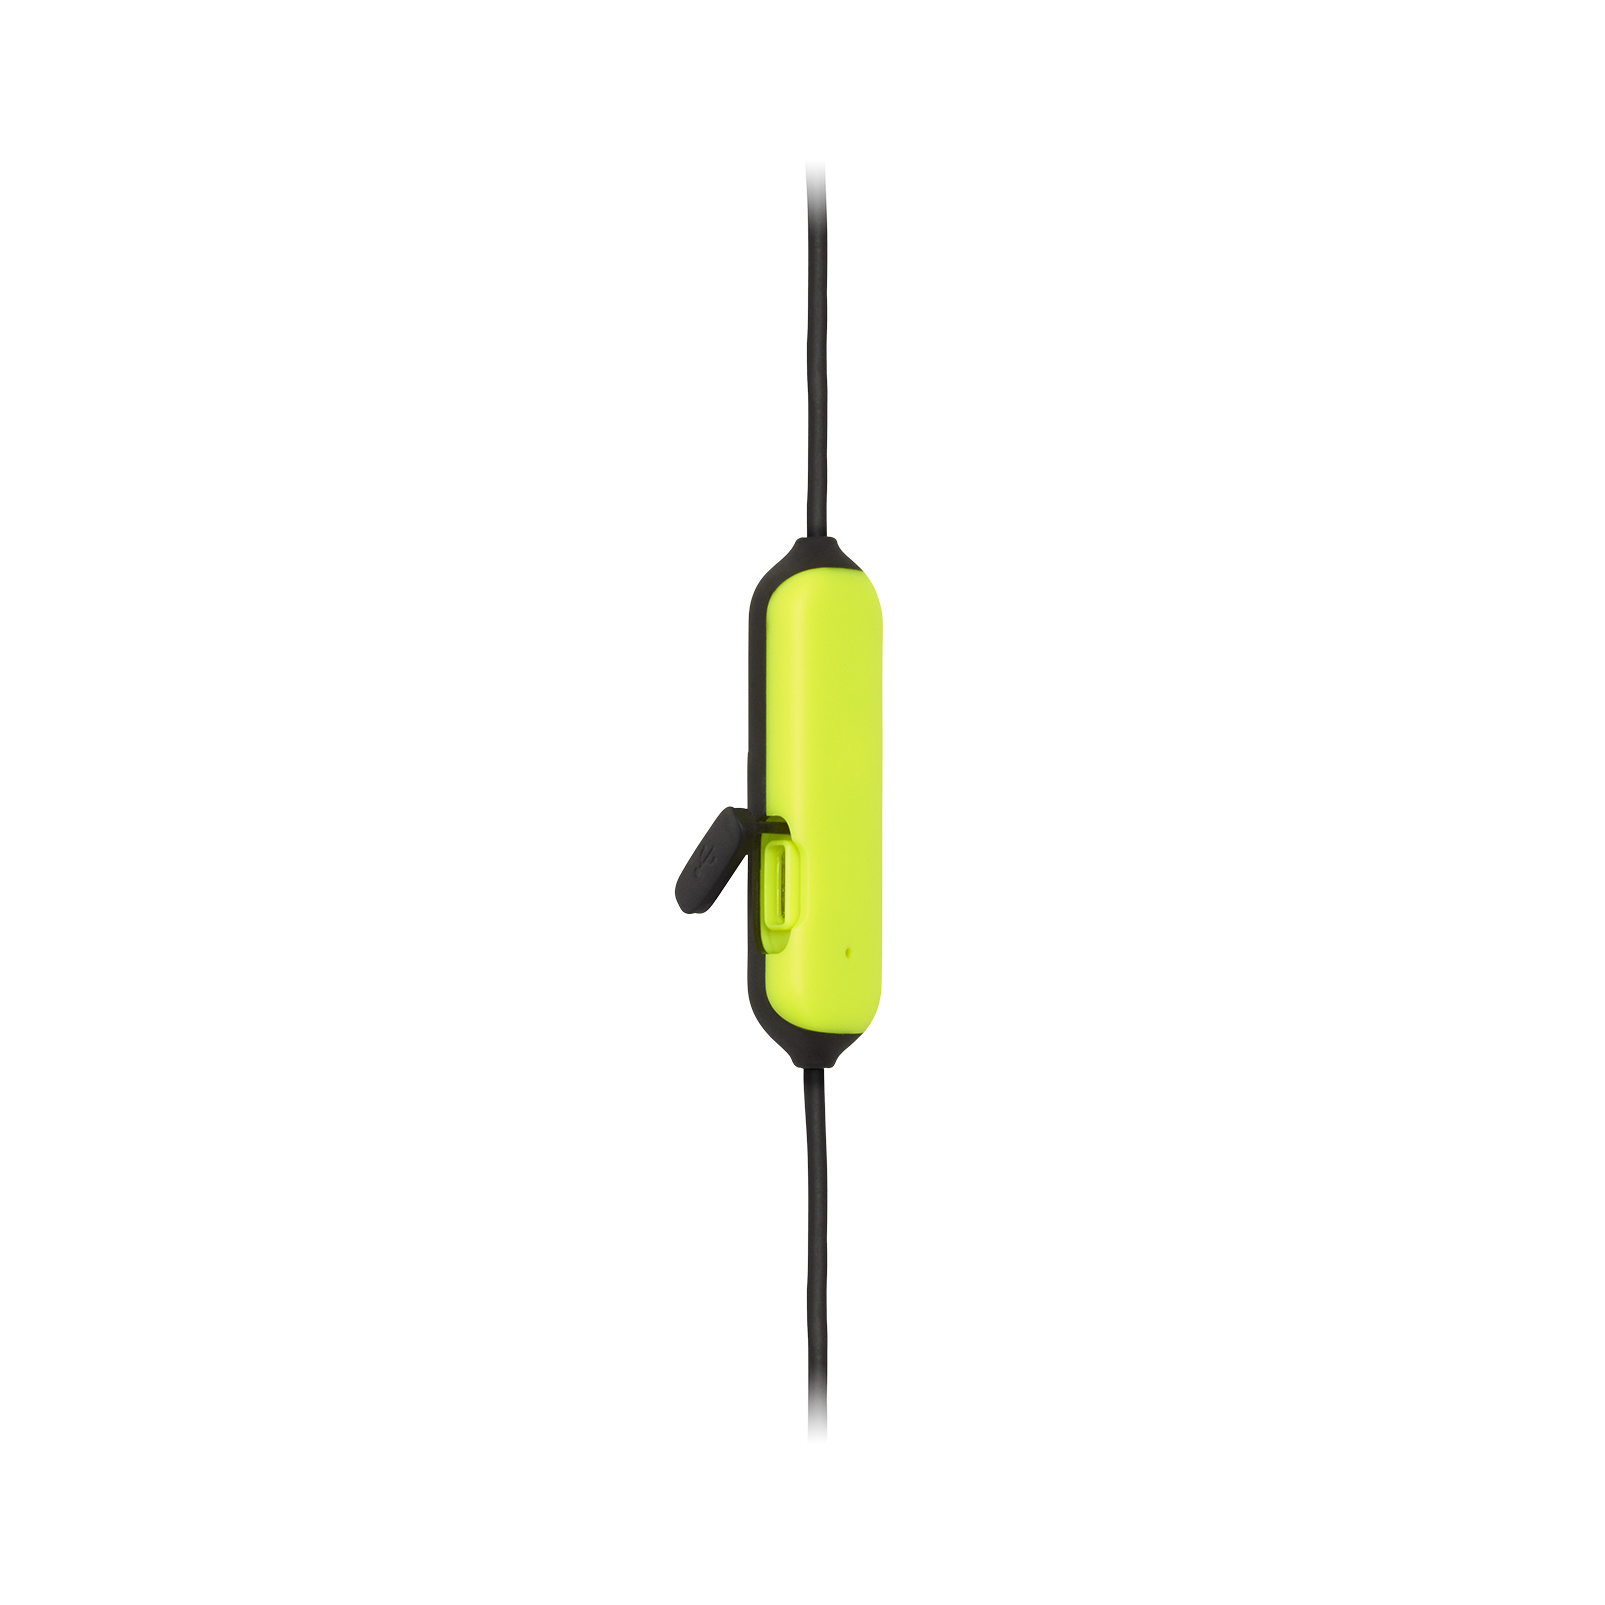 JBL Endurance RUNBT - Green - Sweatproof Wireless In-Ear Sport Headphones - Detailshot 2